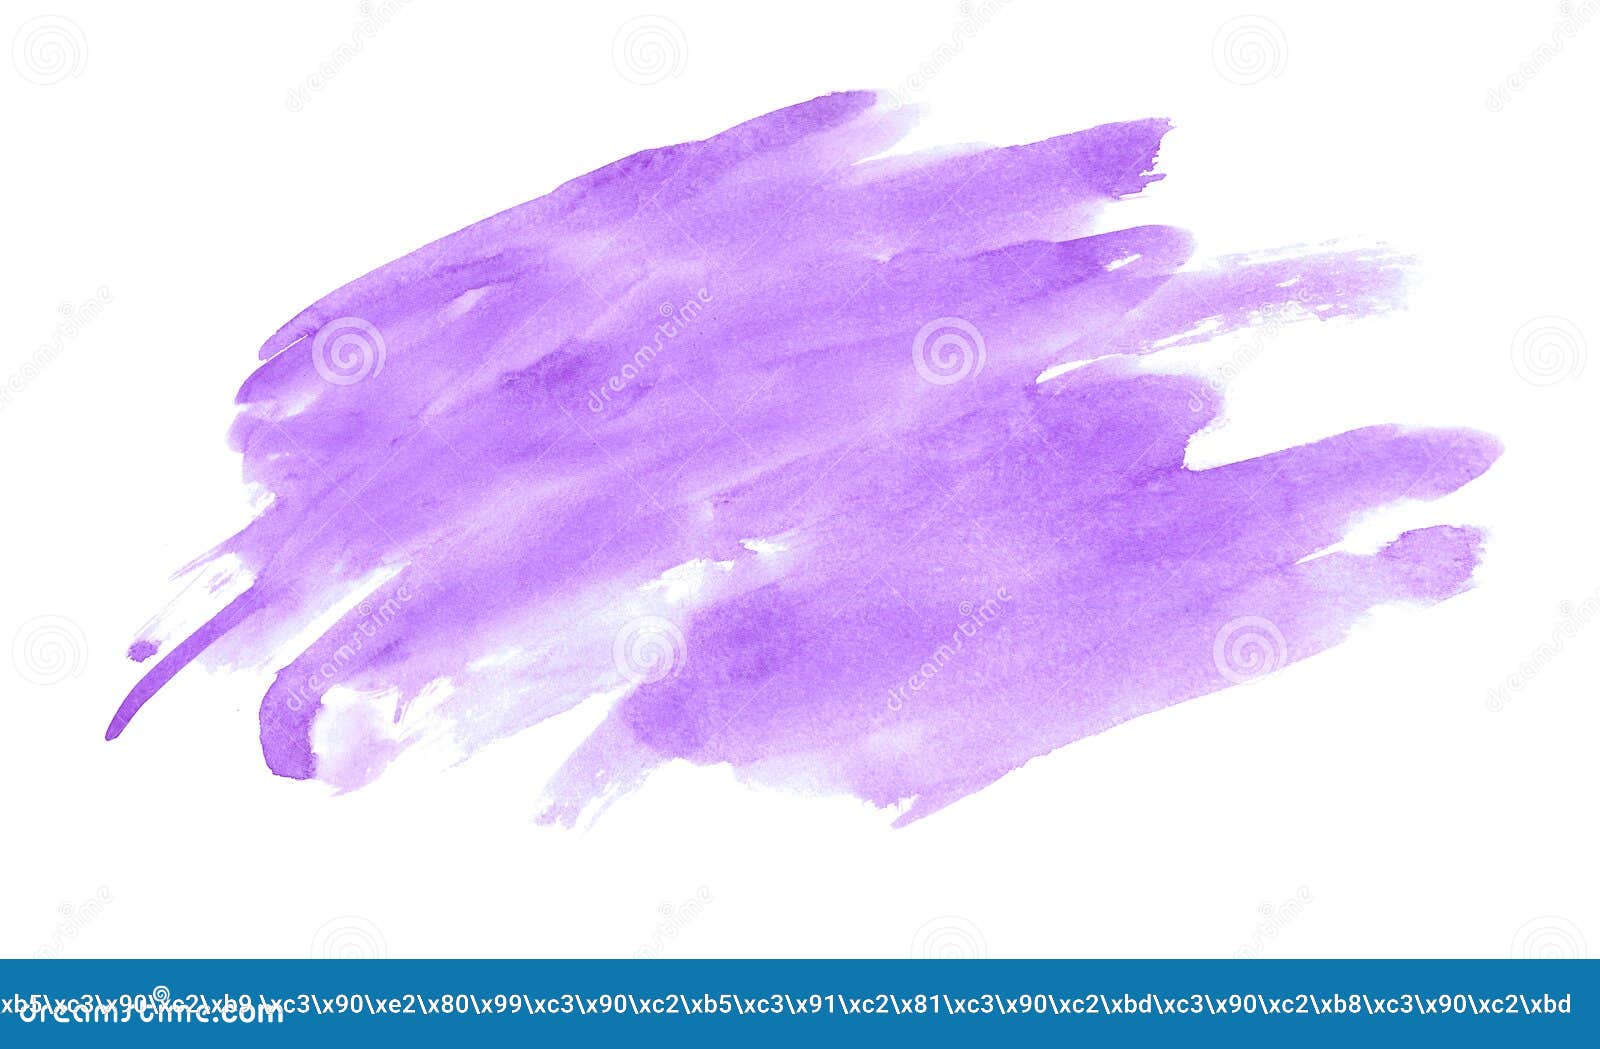 Đắm mình trong màu tím tinh khôi của mực nước vẽ tranh. Khám phá nét đẹp dịu nhẹ và mộc mạc đầy sức sống trong bức tranh Purple Watercolor bằng chất liệu nước, sắc màu tinh tế và phong cách trẻ trung. Xem ngay để tận hưởng cảm giác thanh thản và sảng khoái!